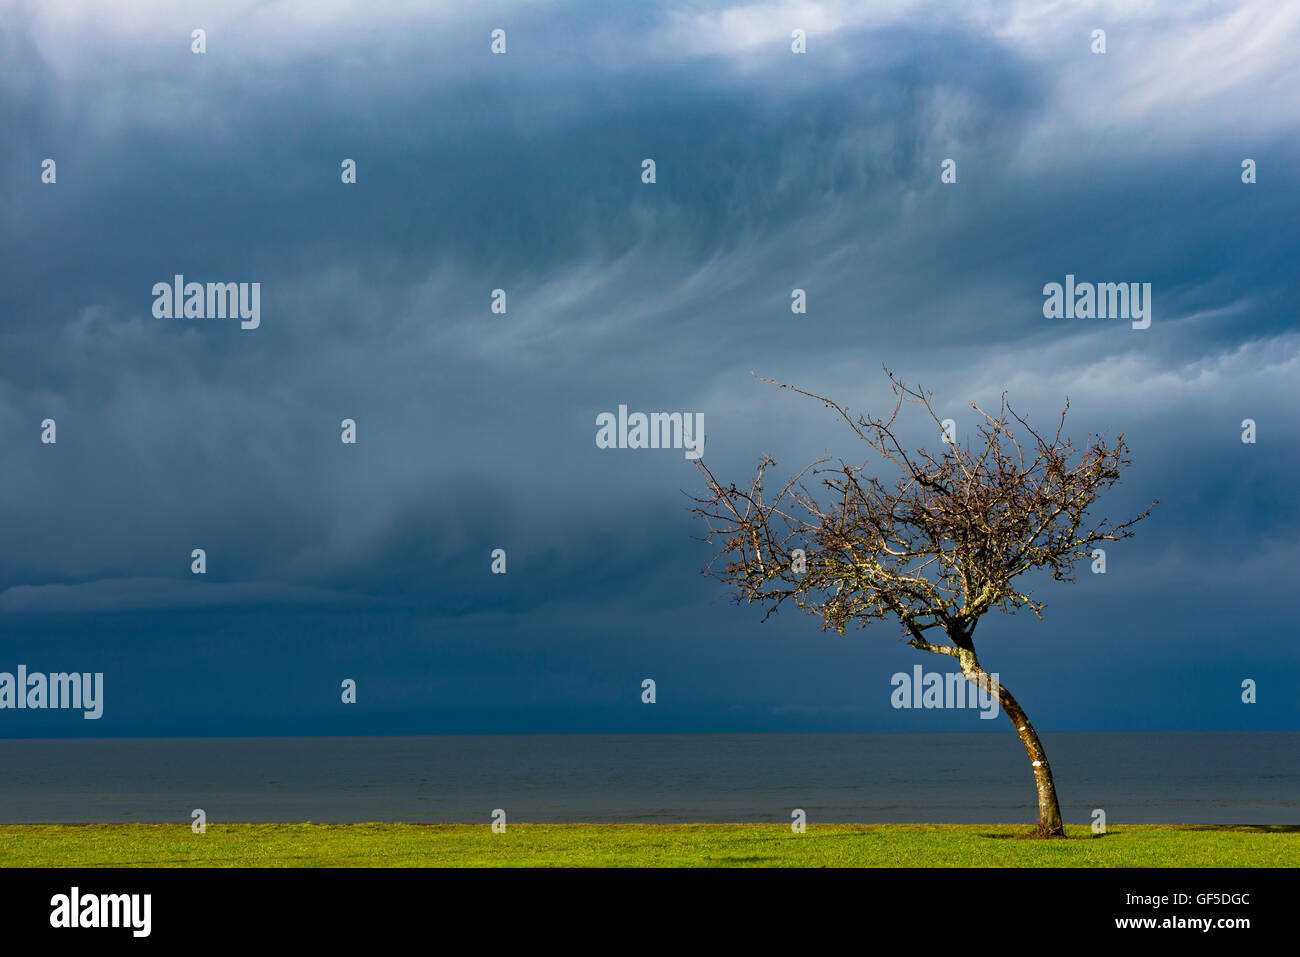 Arbol en temporal, Frutillar, Chile. Tree into storm. Stock Photo